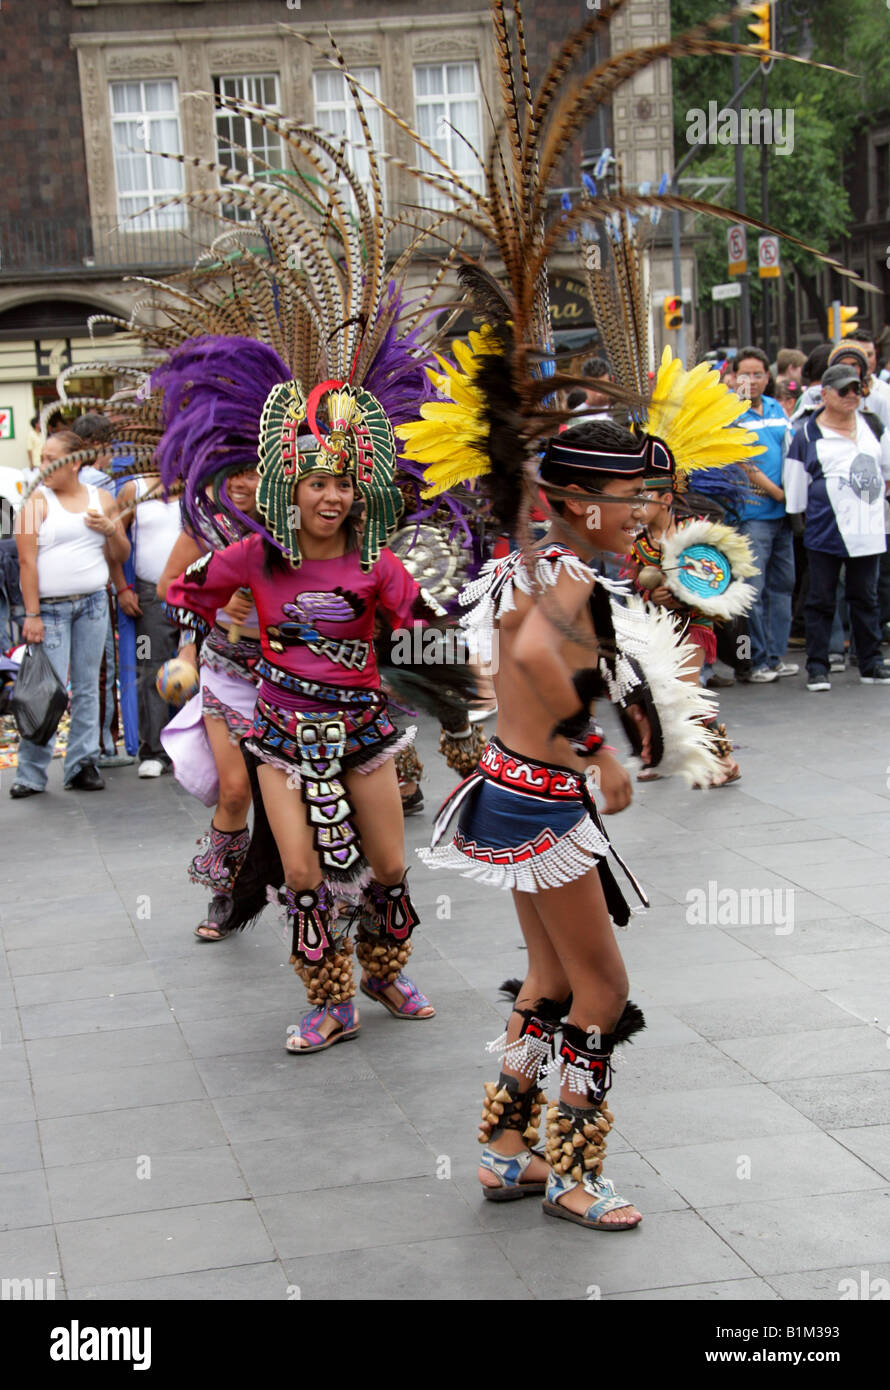 Young Mexican Dancers in Aztec Costume Zocalo Square Plaza de la Constitucion Mexico City Mexico Stock Photo